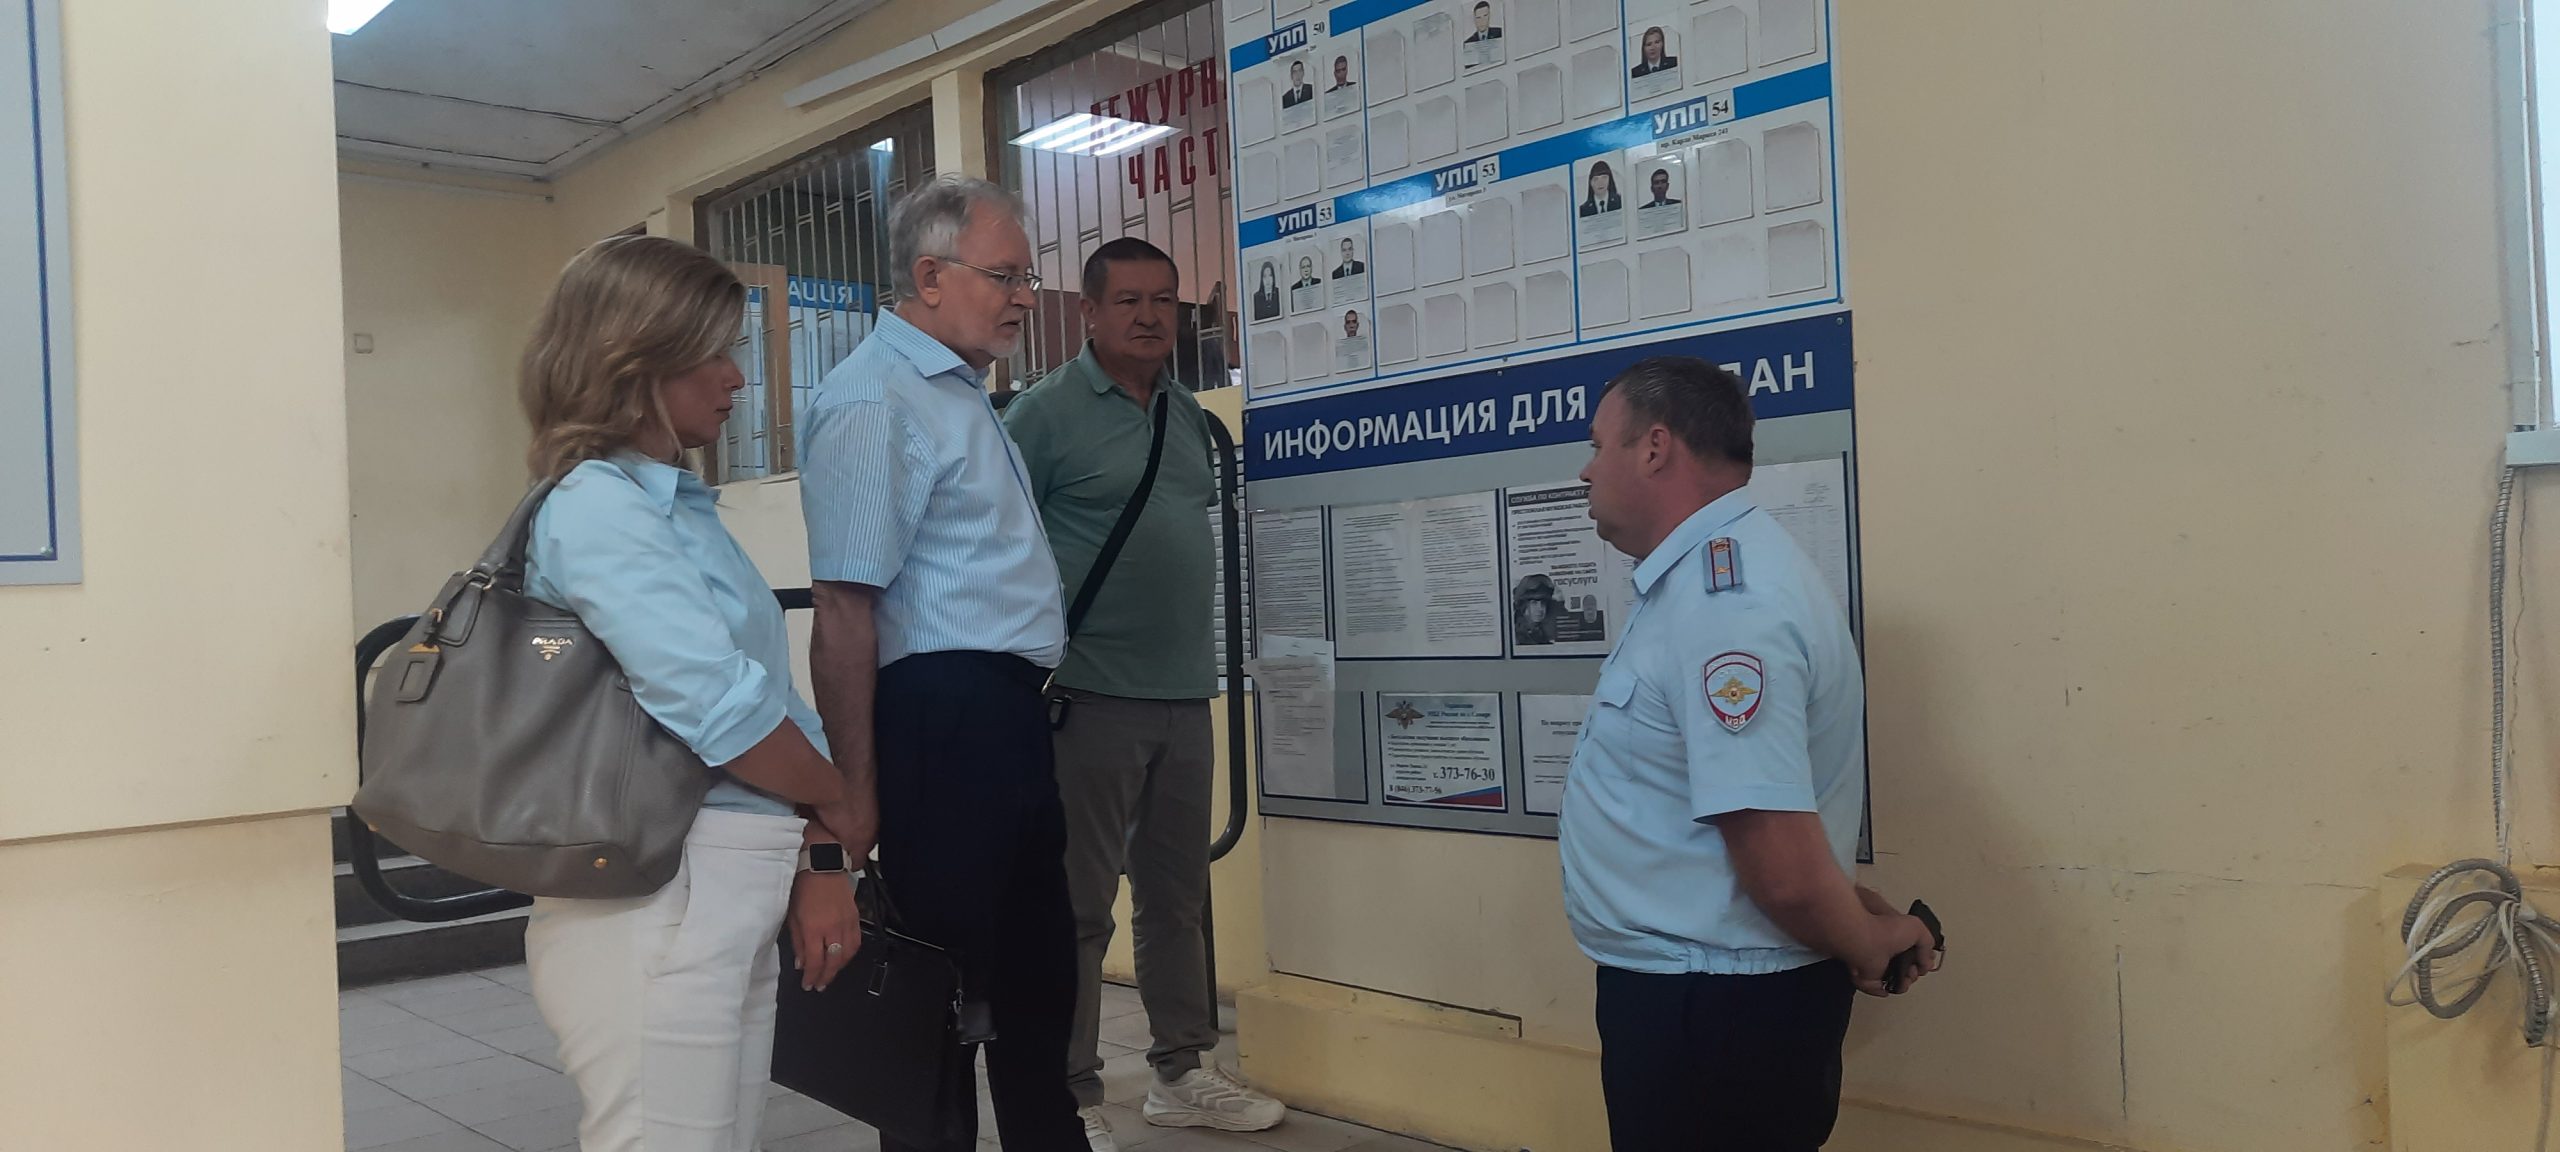 Общественники проверили работу отдела полиции по Октябрьскому району